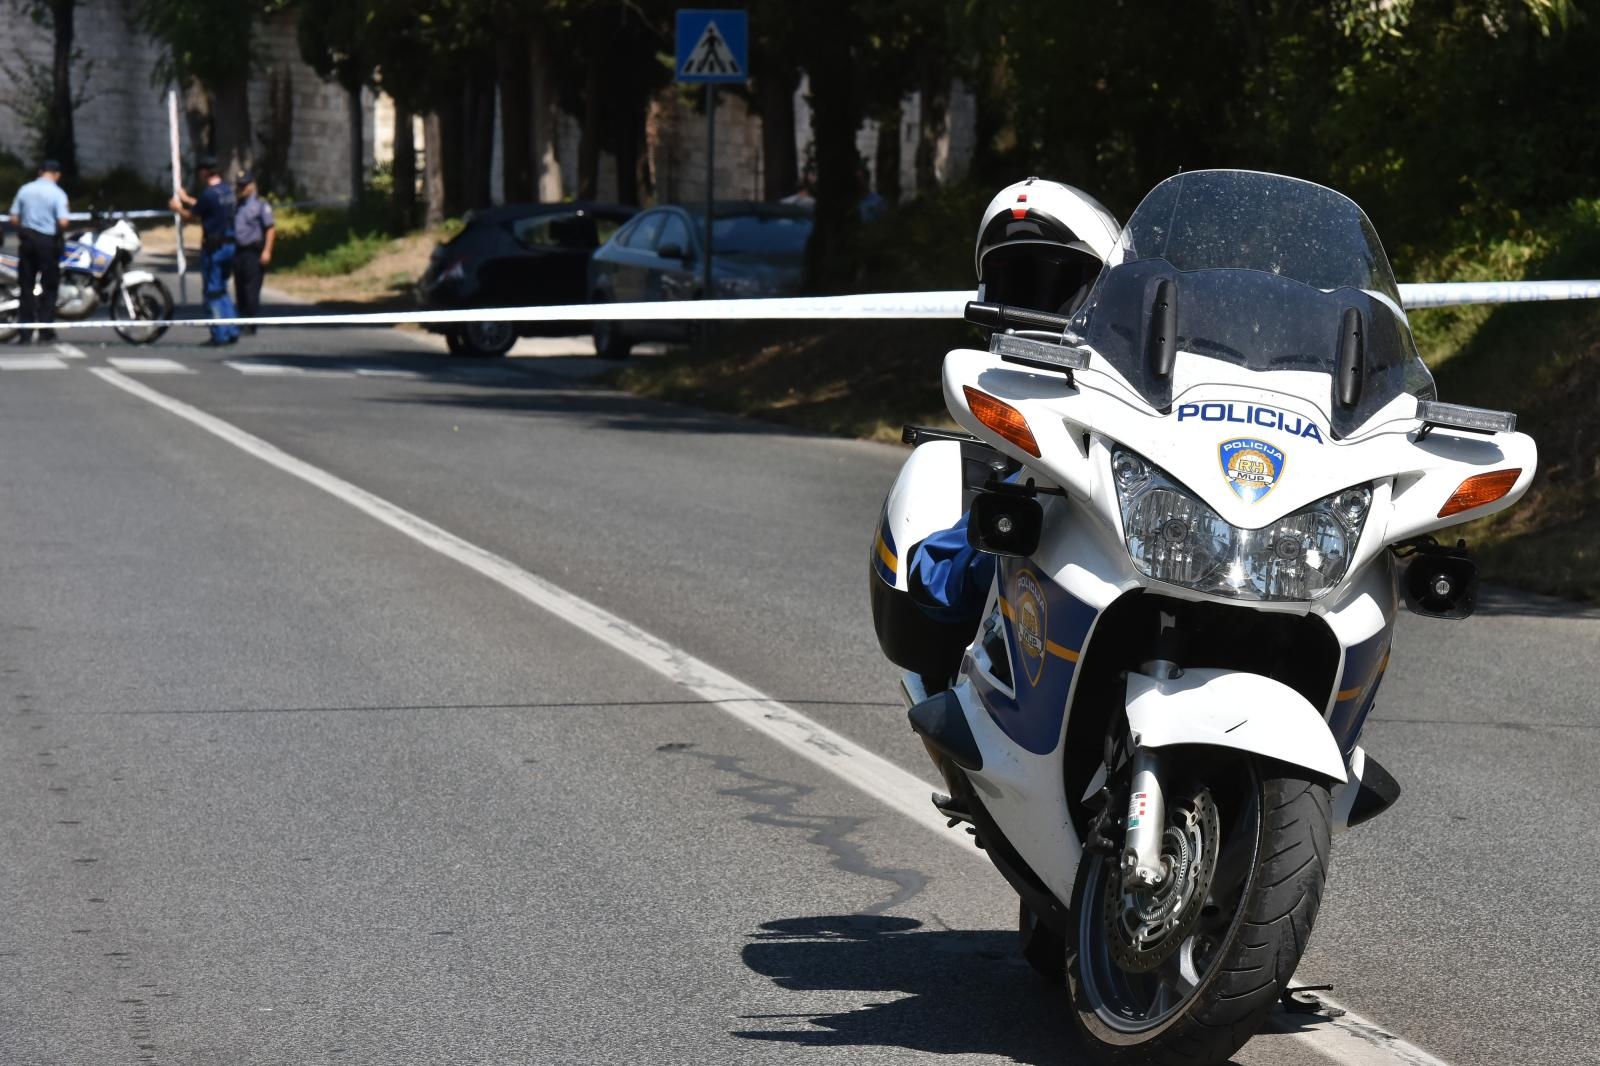 16.08.2017., Pula - Danas od 12.20 sati za sav je promet zatvorena Trscanska ulica u Puli. Policija je zatvorila cestu zbog prometne nesrece u kojoj je ozlijedjen policijski djelatnik. 
Nesreca se dogodila u 12.12 sati kad se iz, za sada neutvrdjenih razloga dogodio sudar izmedju motocikla i osobnog vozila talijanskih registarskih oznaka. U nesreci je ozlijedjen policijski djelatnik koji je upravljao motociklom, te je prevezen u Opcu bolnicu Pula. 
O svemu je obavijesten drzavni odvjetnik, a ocevid je u tijeku. 
Photo: Dusko Marusic/PIXSELL